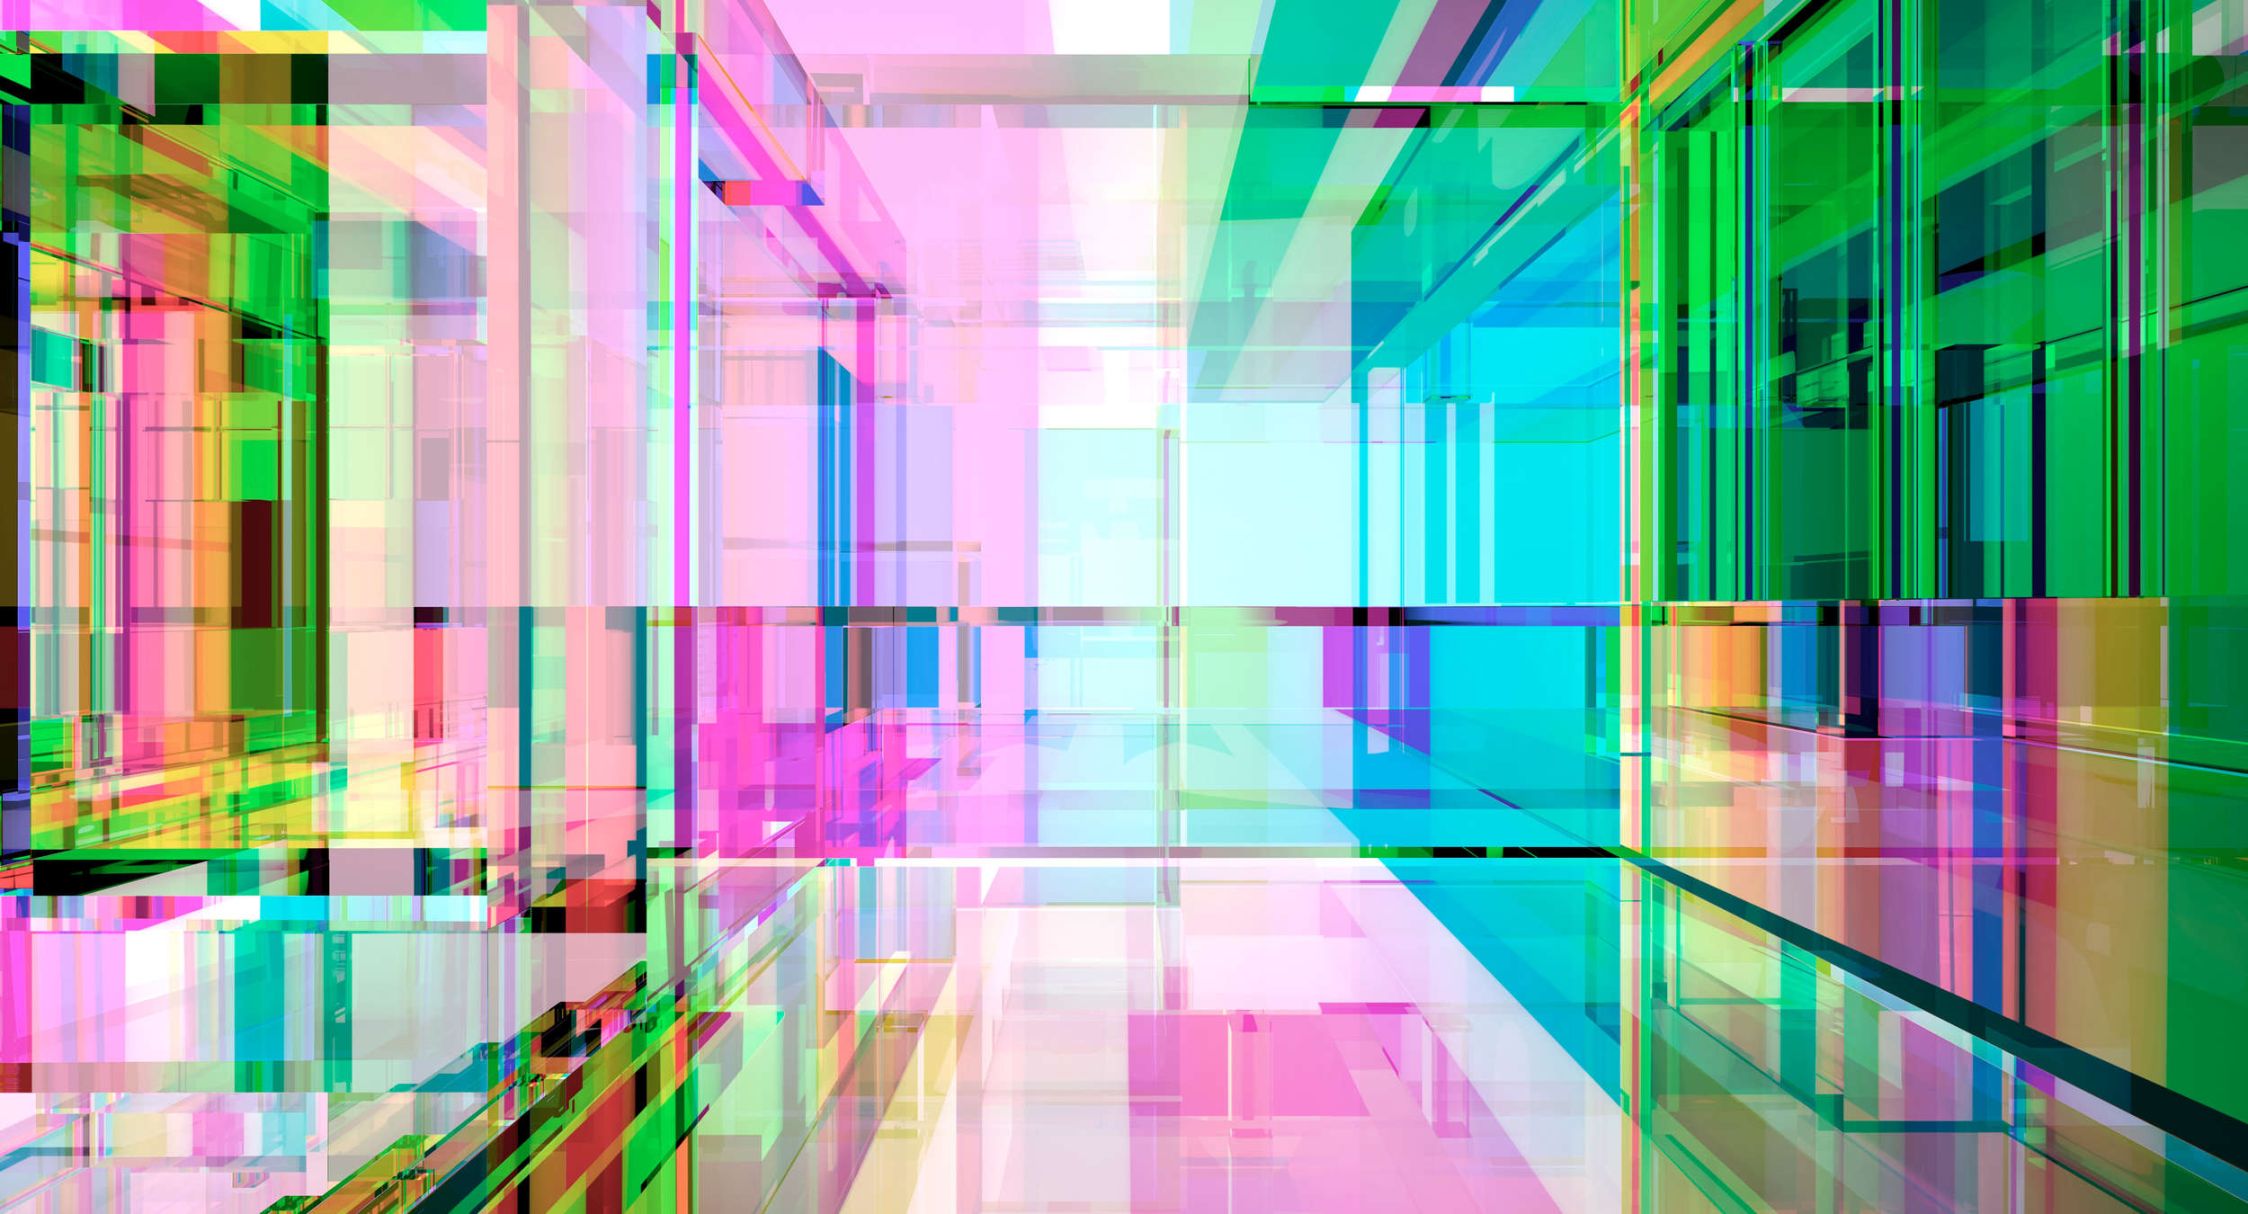             Digital behang »focus« - Futuristisch ontwerp in een vierde dimensie in neonkleuren - Licht getextureerde vliesstof
        